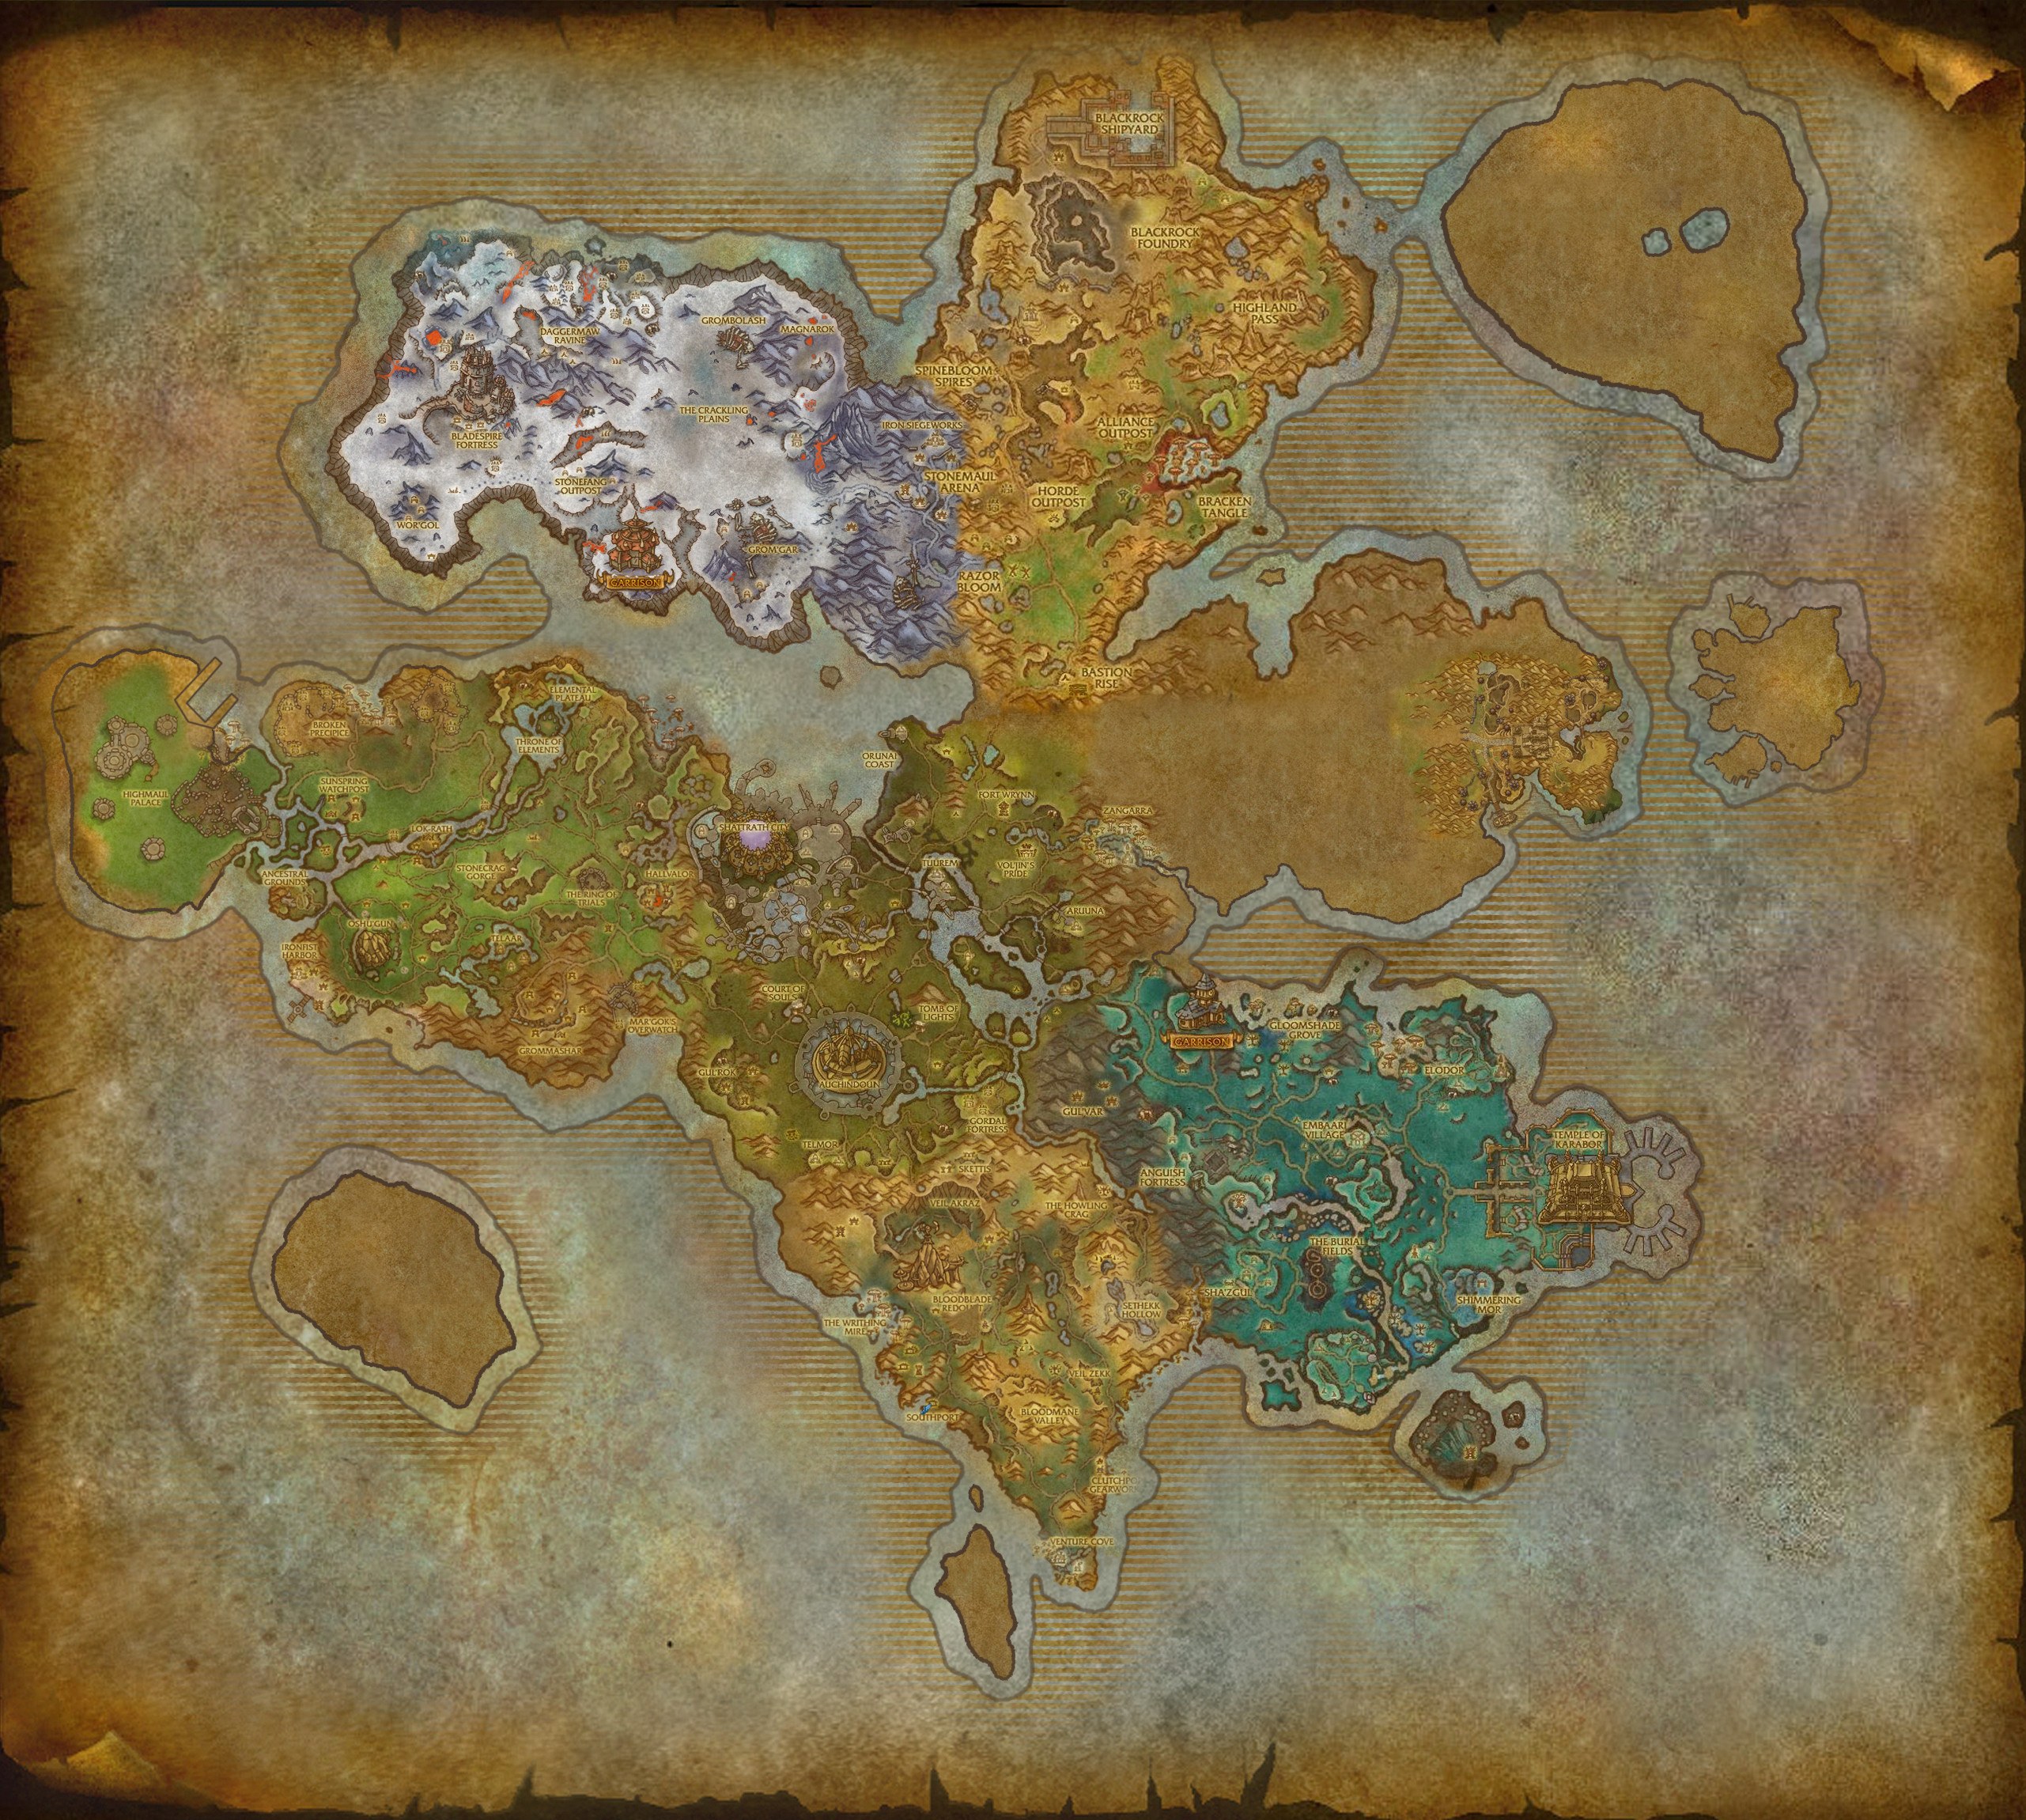 Земли ящеров. Warcraft Дренор карта. Дренор ВОВ карта. Варкрафт 3 карта Дренора. Варкрафт ВОВ Дренор.